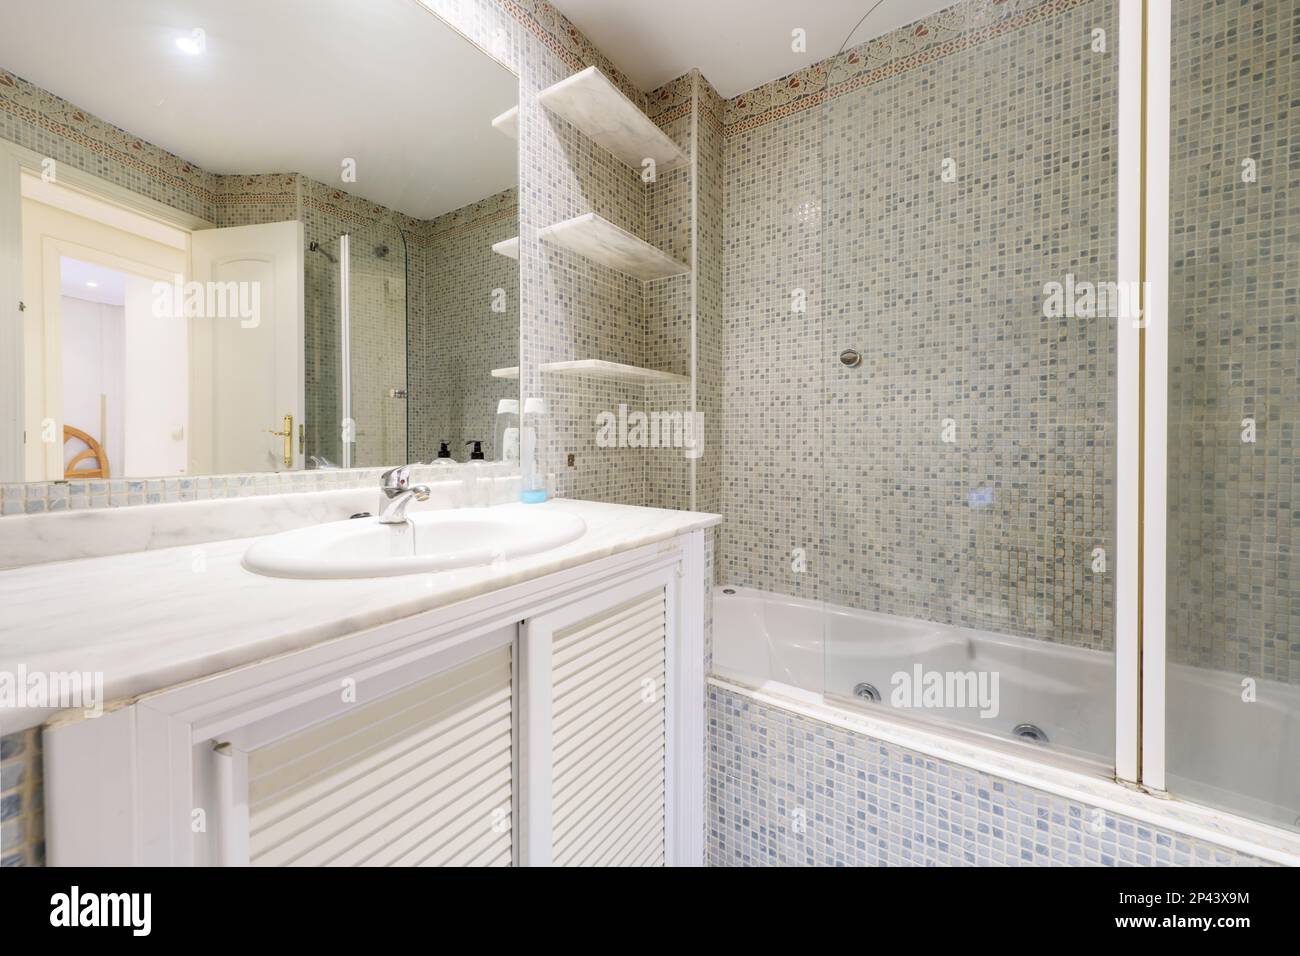 Bagno con lavabo in porcellana bianca, piano in marmo, rubinetti cromati, specchio senza cornice, ripiani in marmo e pareti piastrellate con gresite Foto Stock